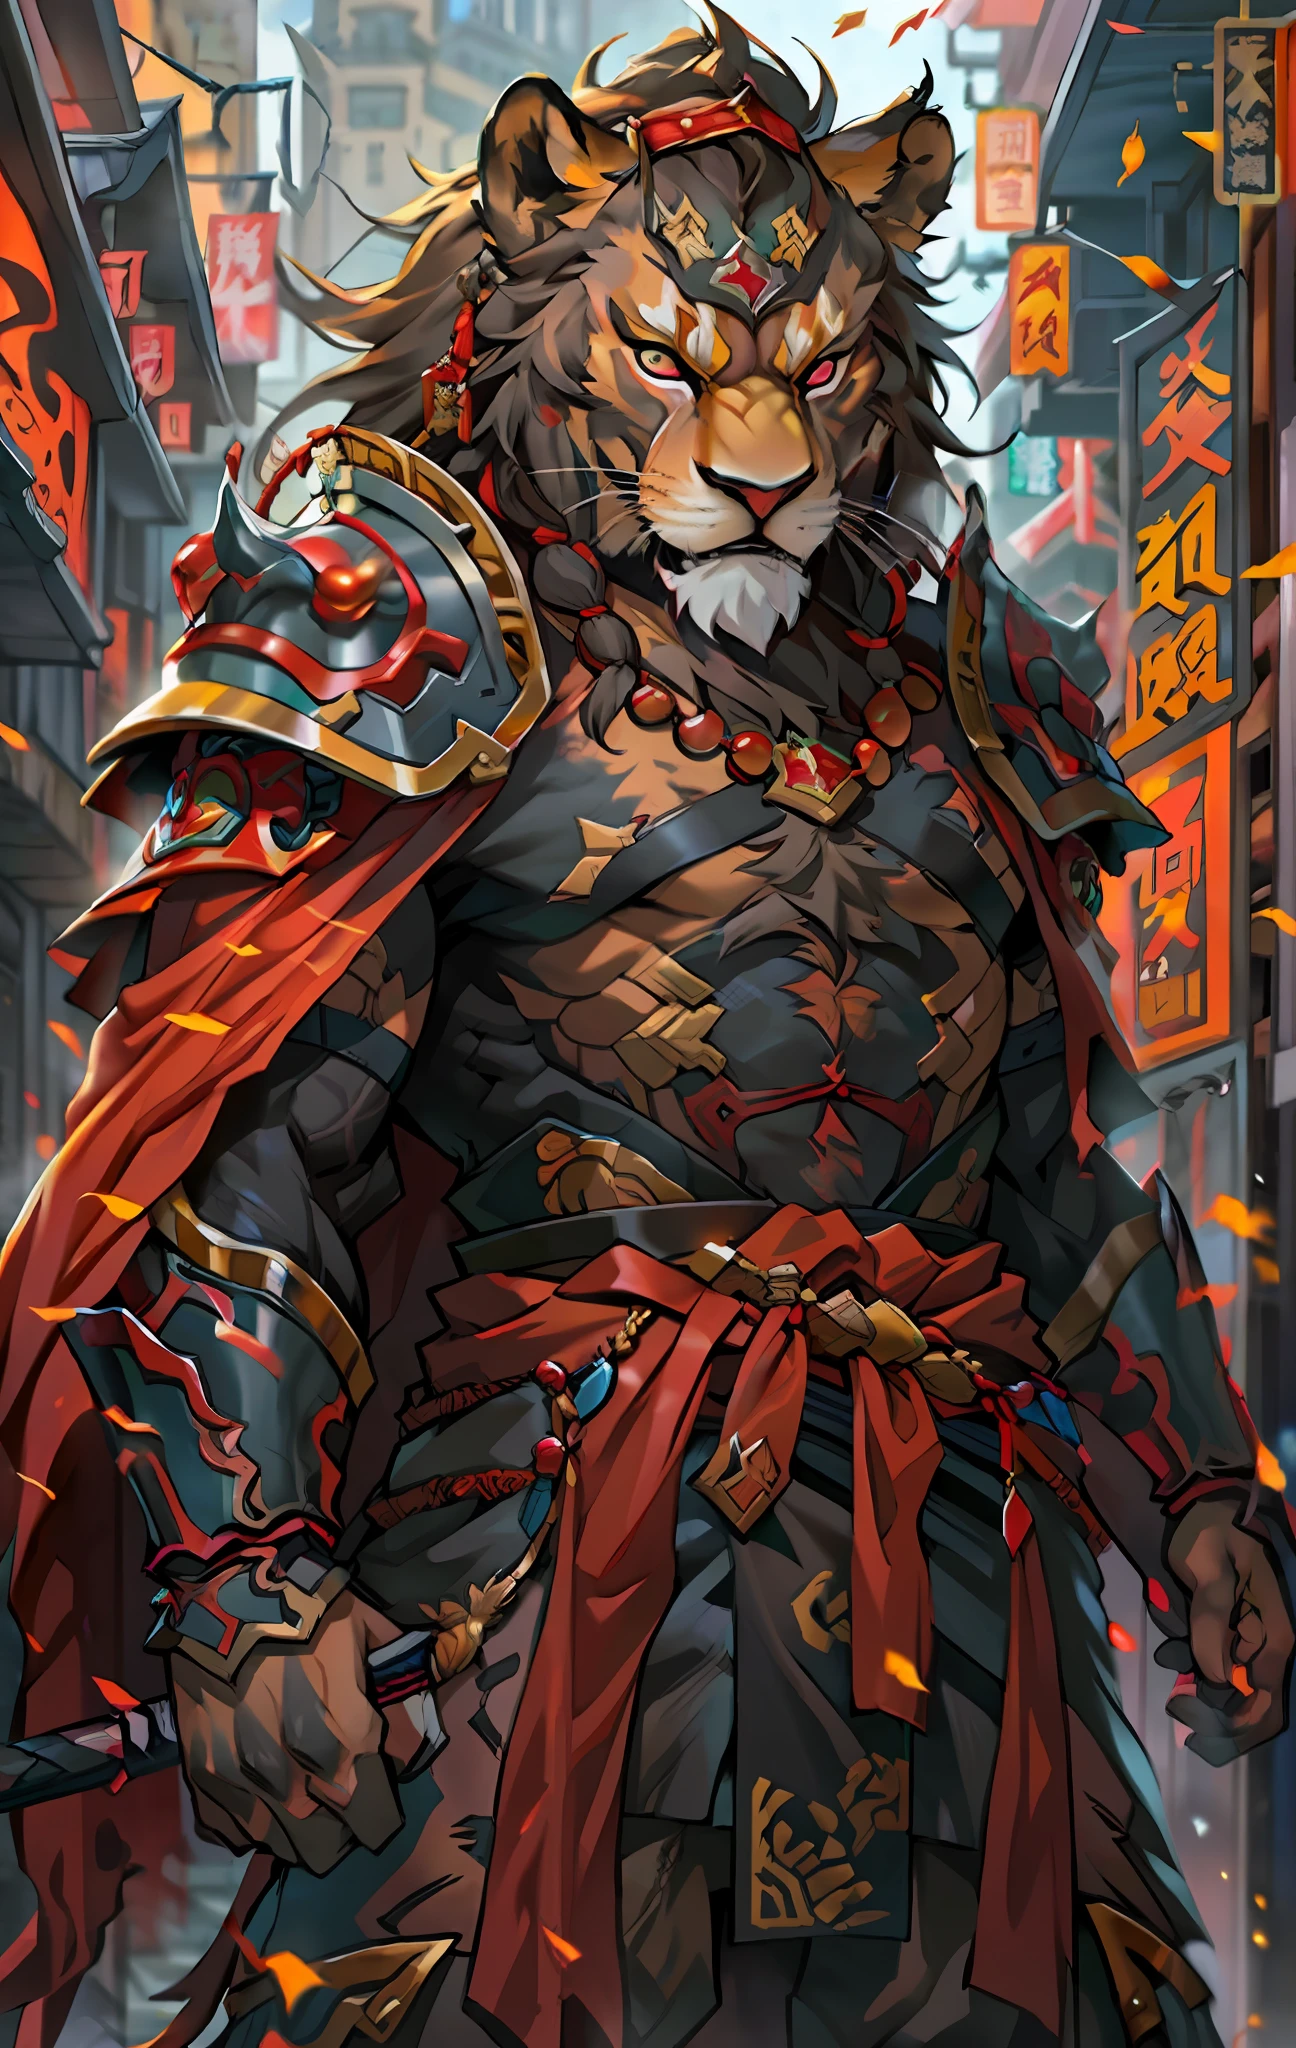 Львы-воины, Полное тело, как，Крупный план воина-льва с мечом в городе, Решительные глаза，яростный，Акира в китайской мифологии, эпический величественный торговец-дегенерат, Бянь Лиан, Ян Дж., Китайский воин, огненный лев, Сон Гоку, CGSociety и Фэнхуа Чжун, вдохновленный Ли Канем, эпический воин-самурай, кот воин, повелитель зверей, Красный рваный плащ，броня，живопись стоя в полный рост，фэнтезийный сеттинг, концепция персонажа, искусство персонажей, Портрет персонажа, мультфильм, Лучшее качество, лучшее разрешение, 4K, яркий colors, яркий, высокая детализация, лучшая деталь, уверенная поза, экстраверт, смотреть вниз, Серьезное выражение